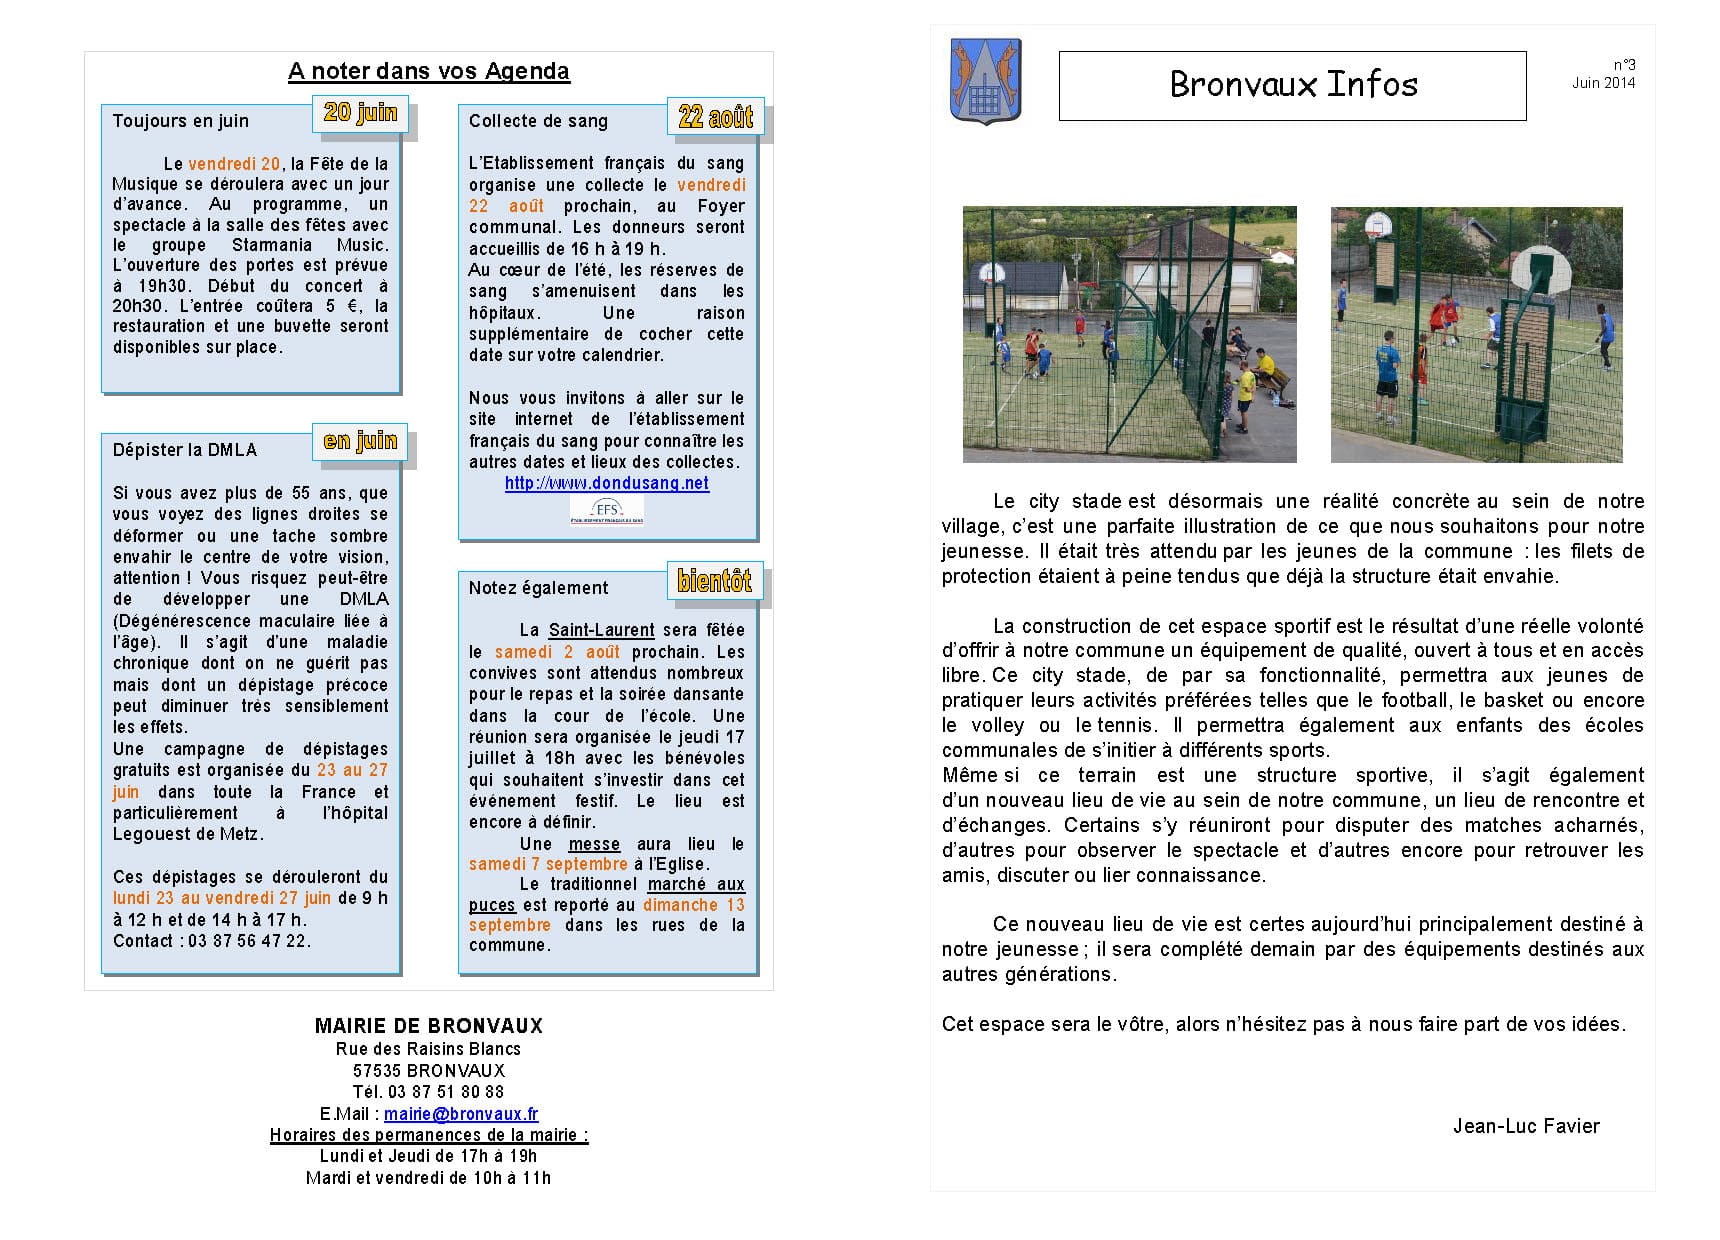 Bronvaux Infos juin 2014